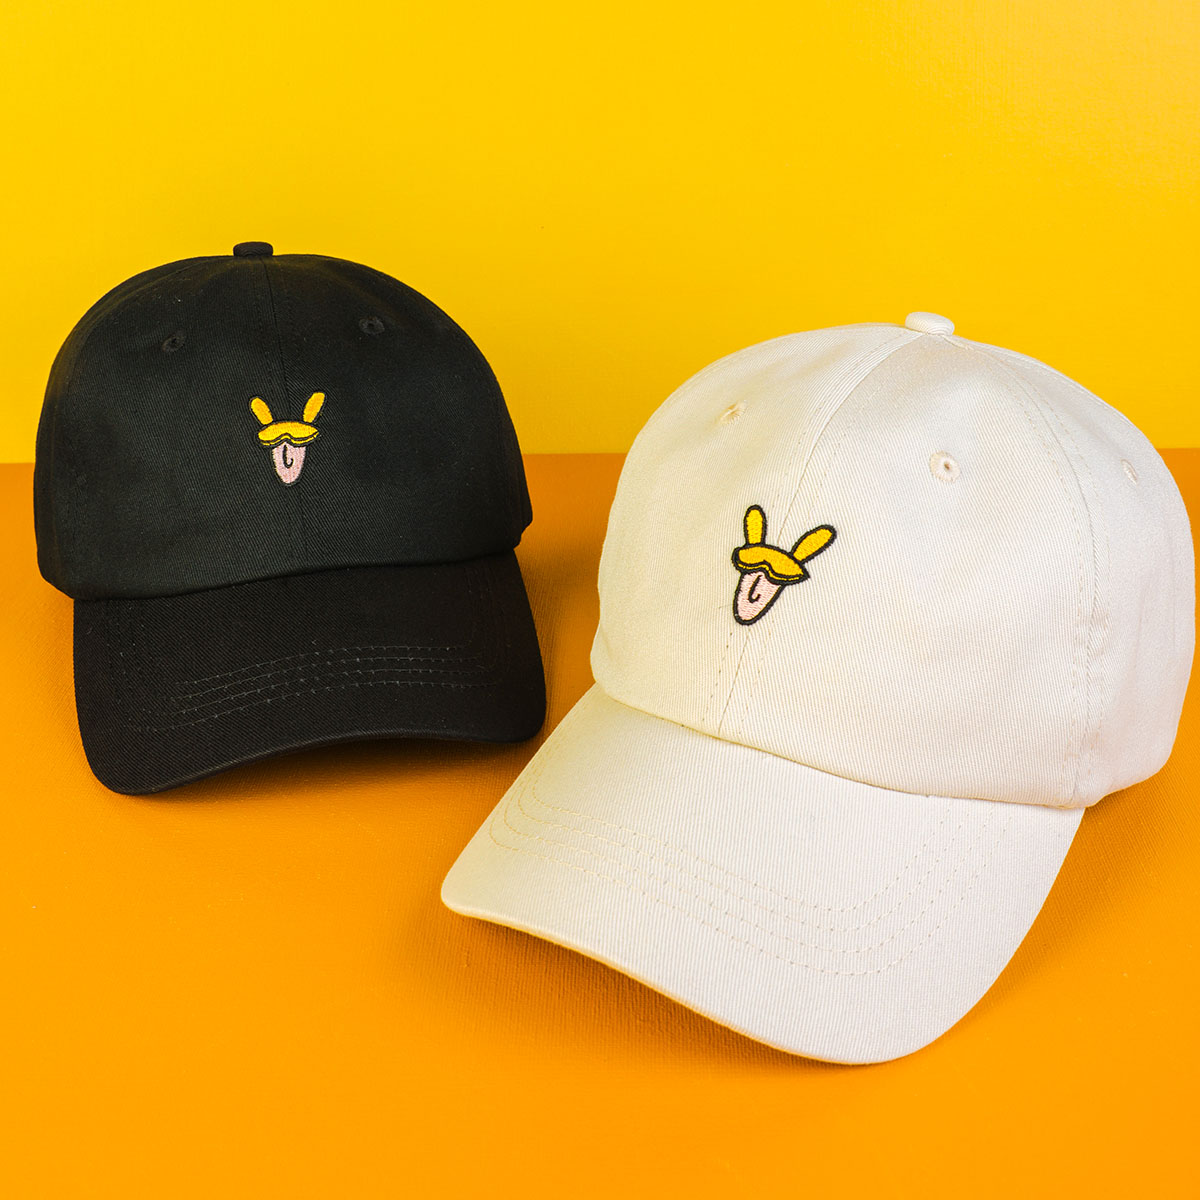 التطريز vfa شعار الرياضة قبعات البيسبول القبعات المخصصة